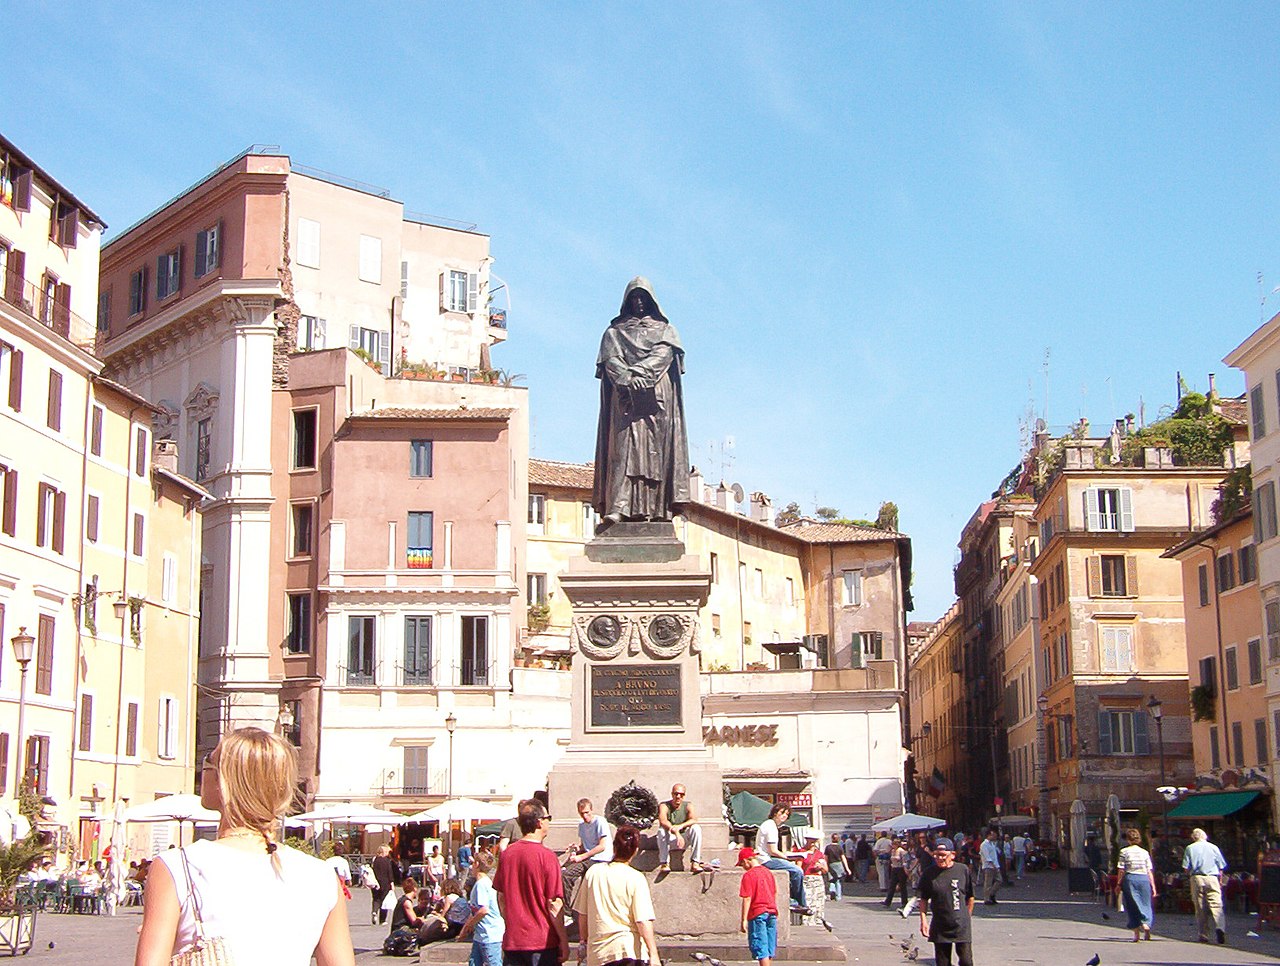 Bruno's statue in the Campo de' Fiori square where he was burned